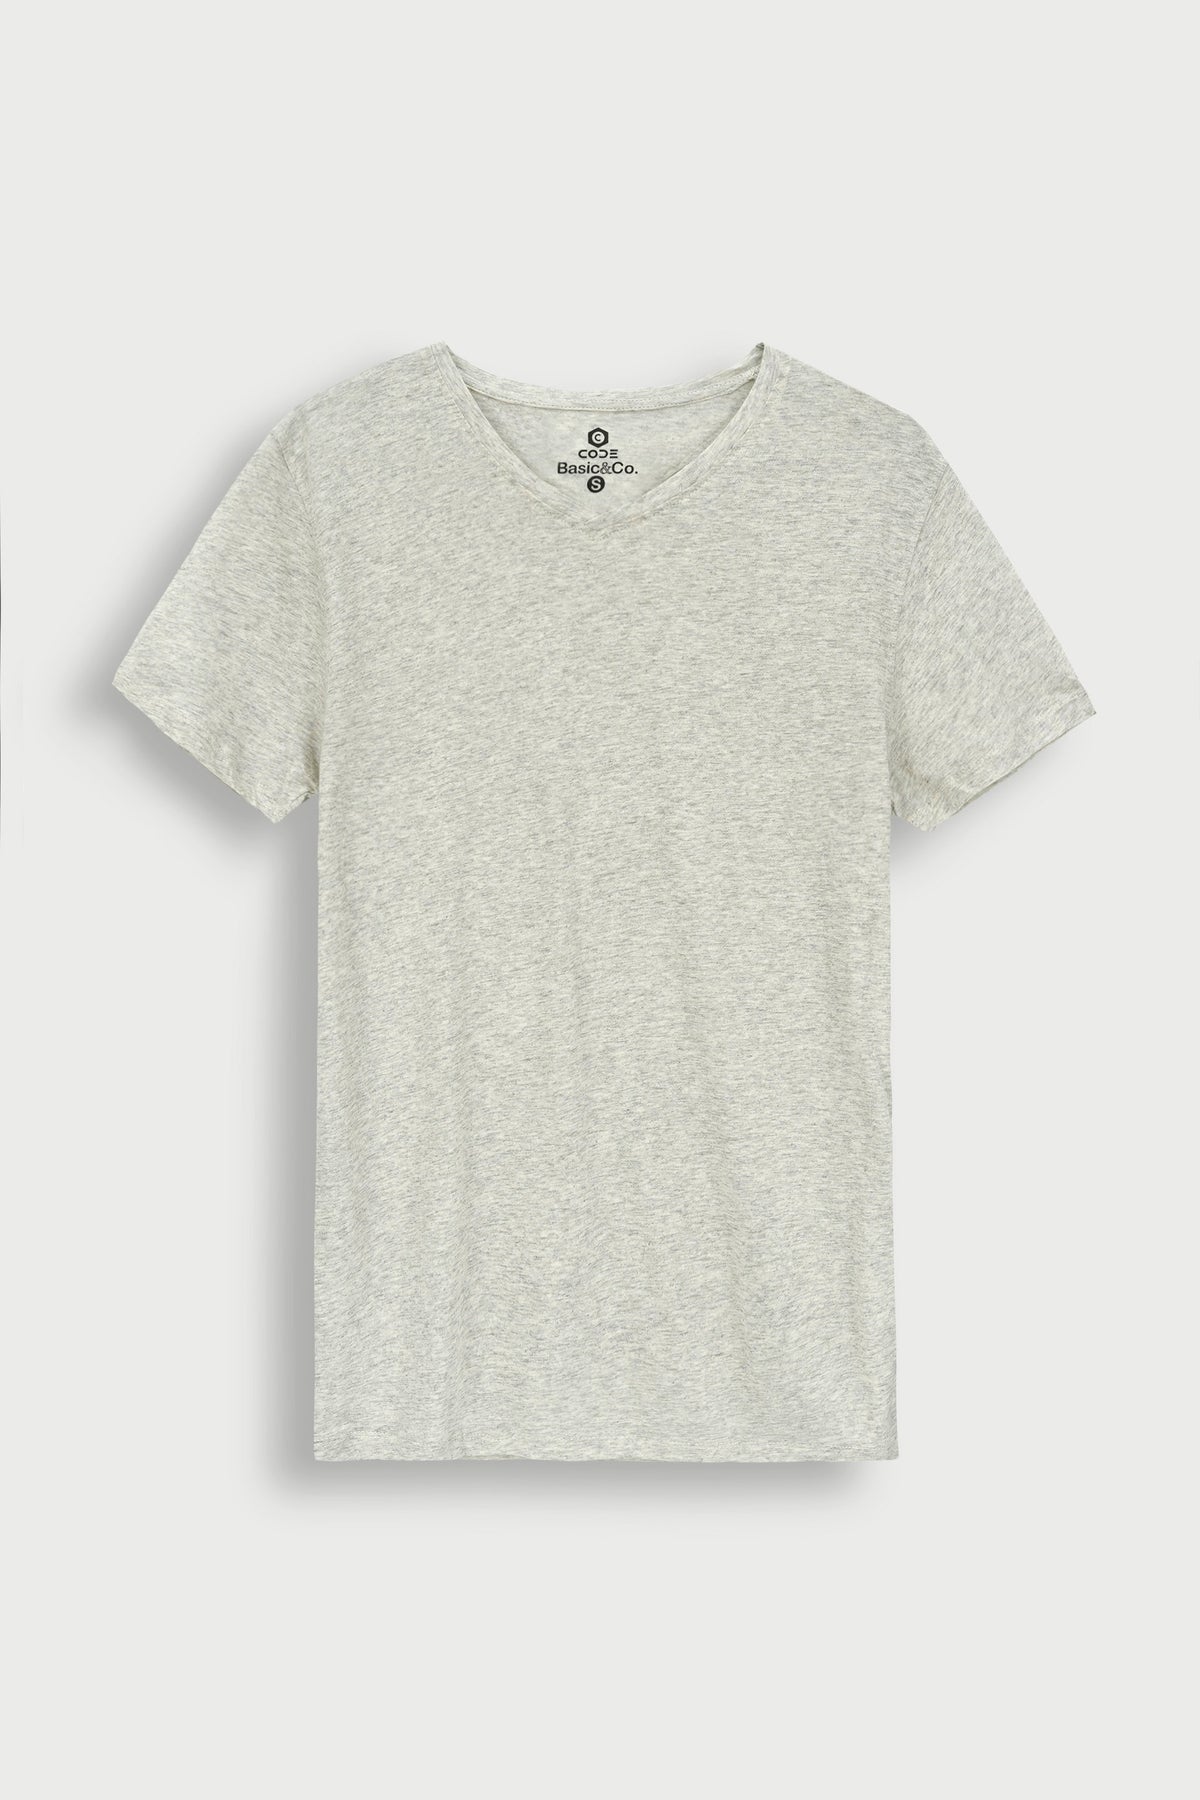 Grey Plain T-Shirt